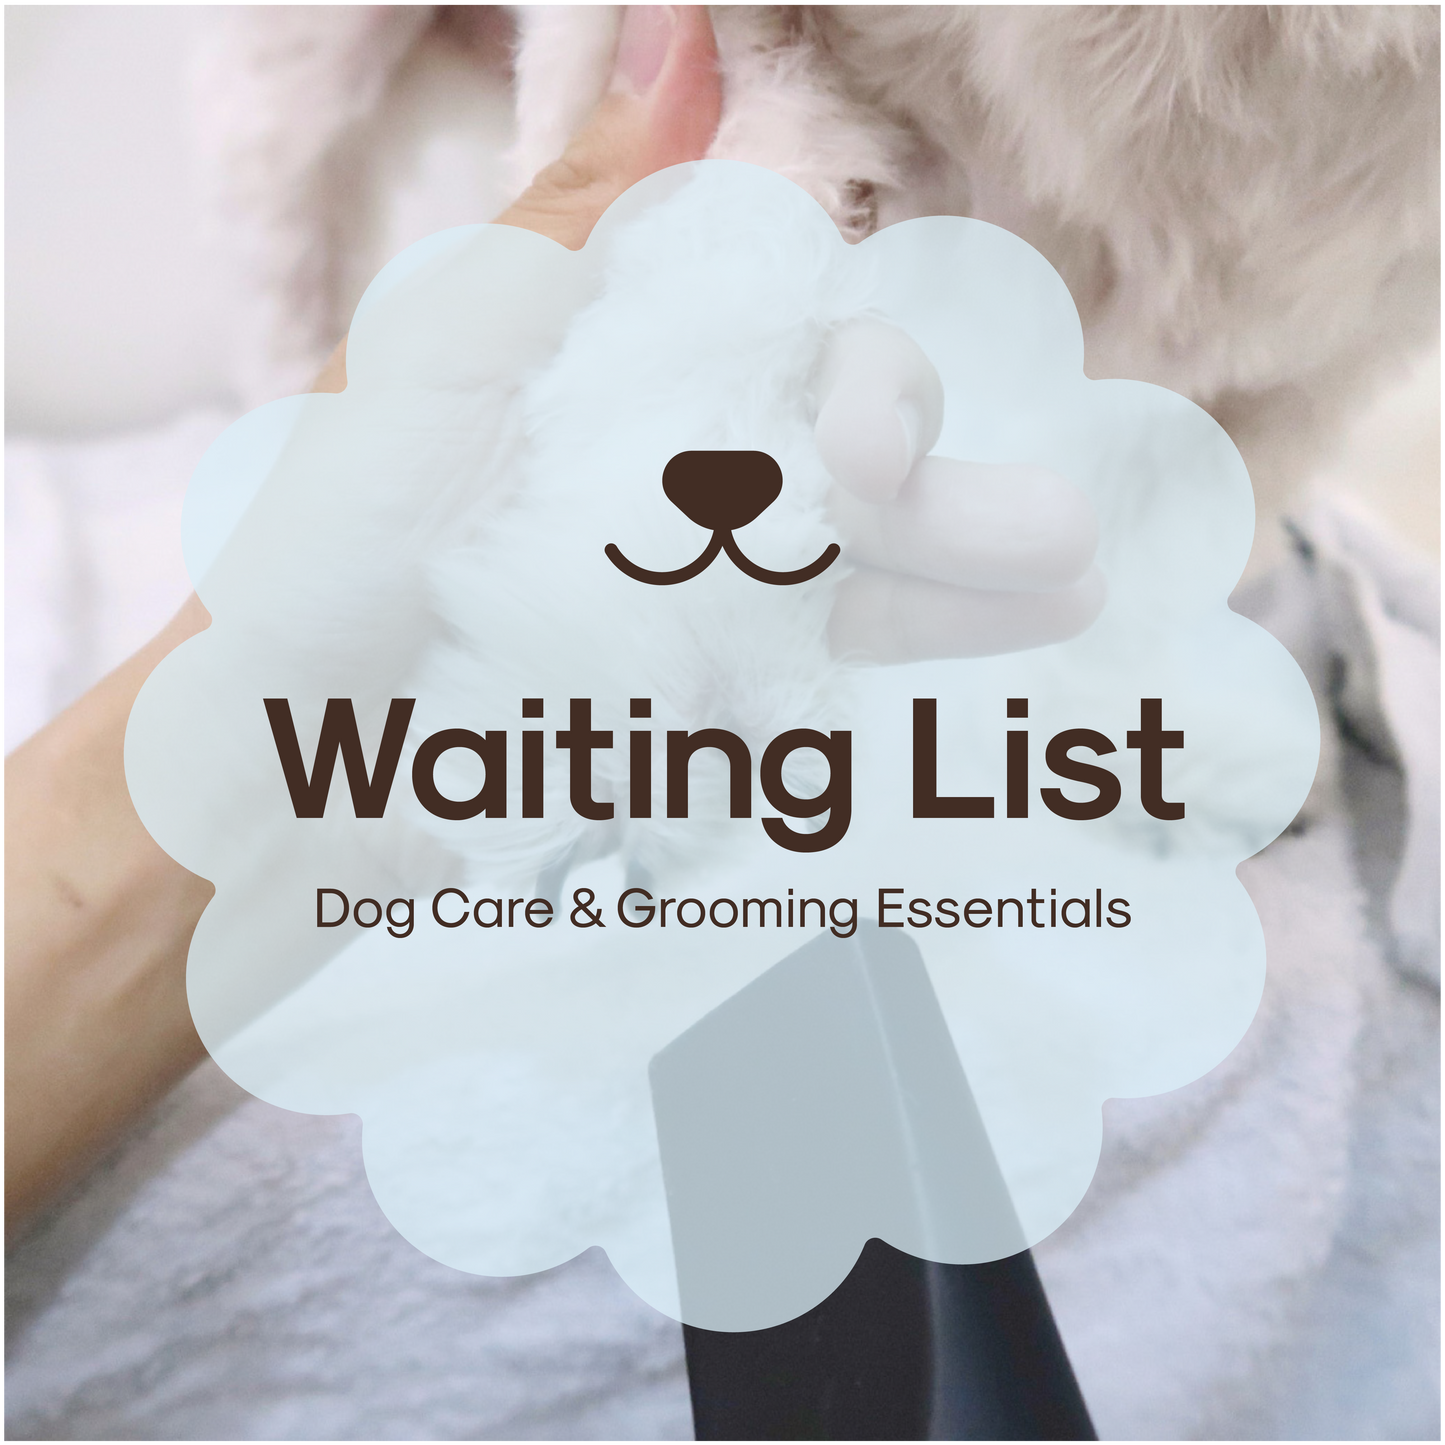 Register Interest: Dog Care & Grooming Workshop